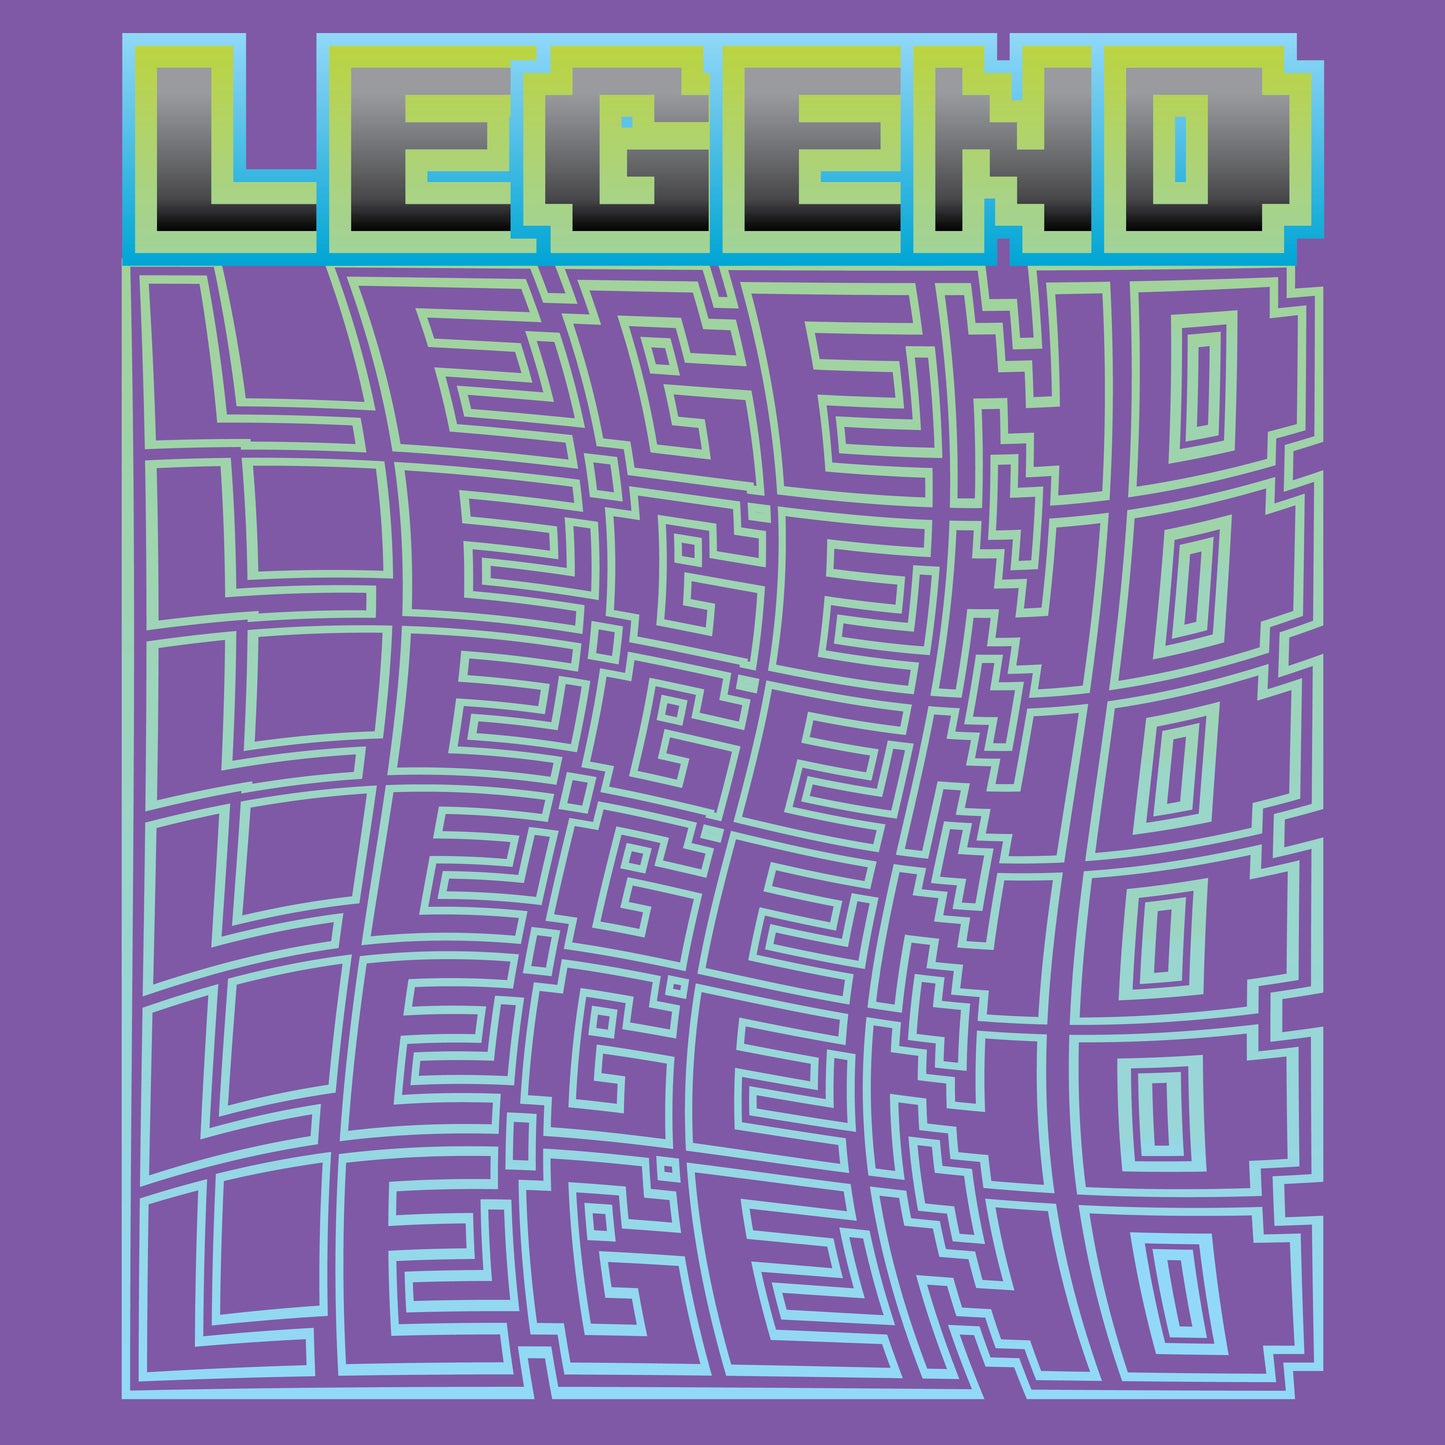 Digital Dynasty: The Legend Tee  - Blue Edition